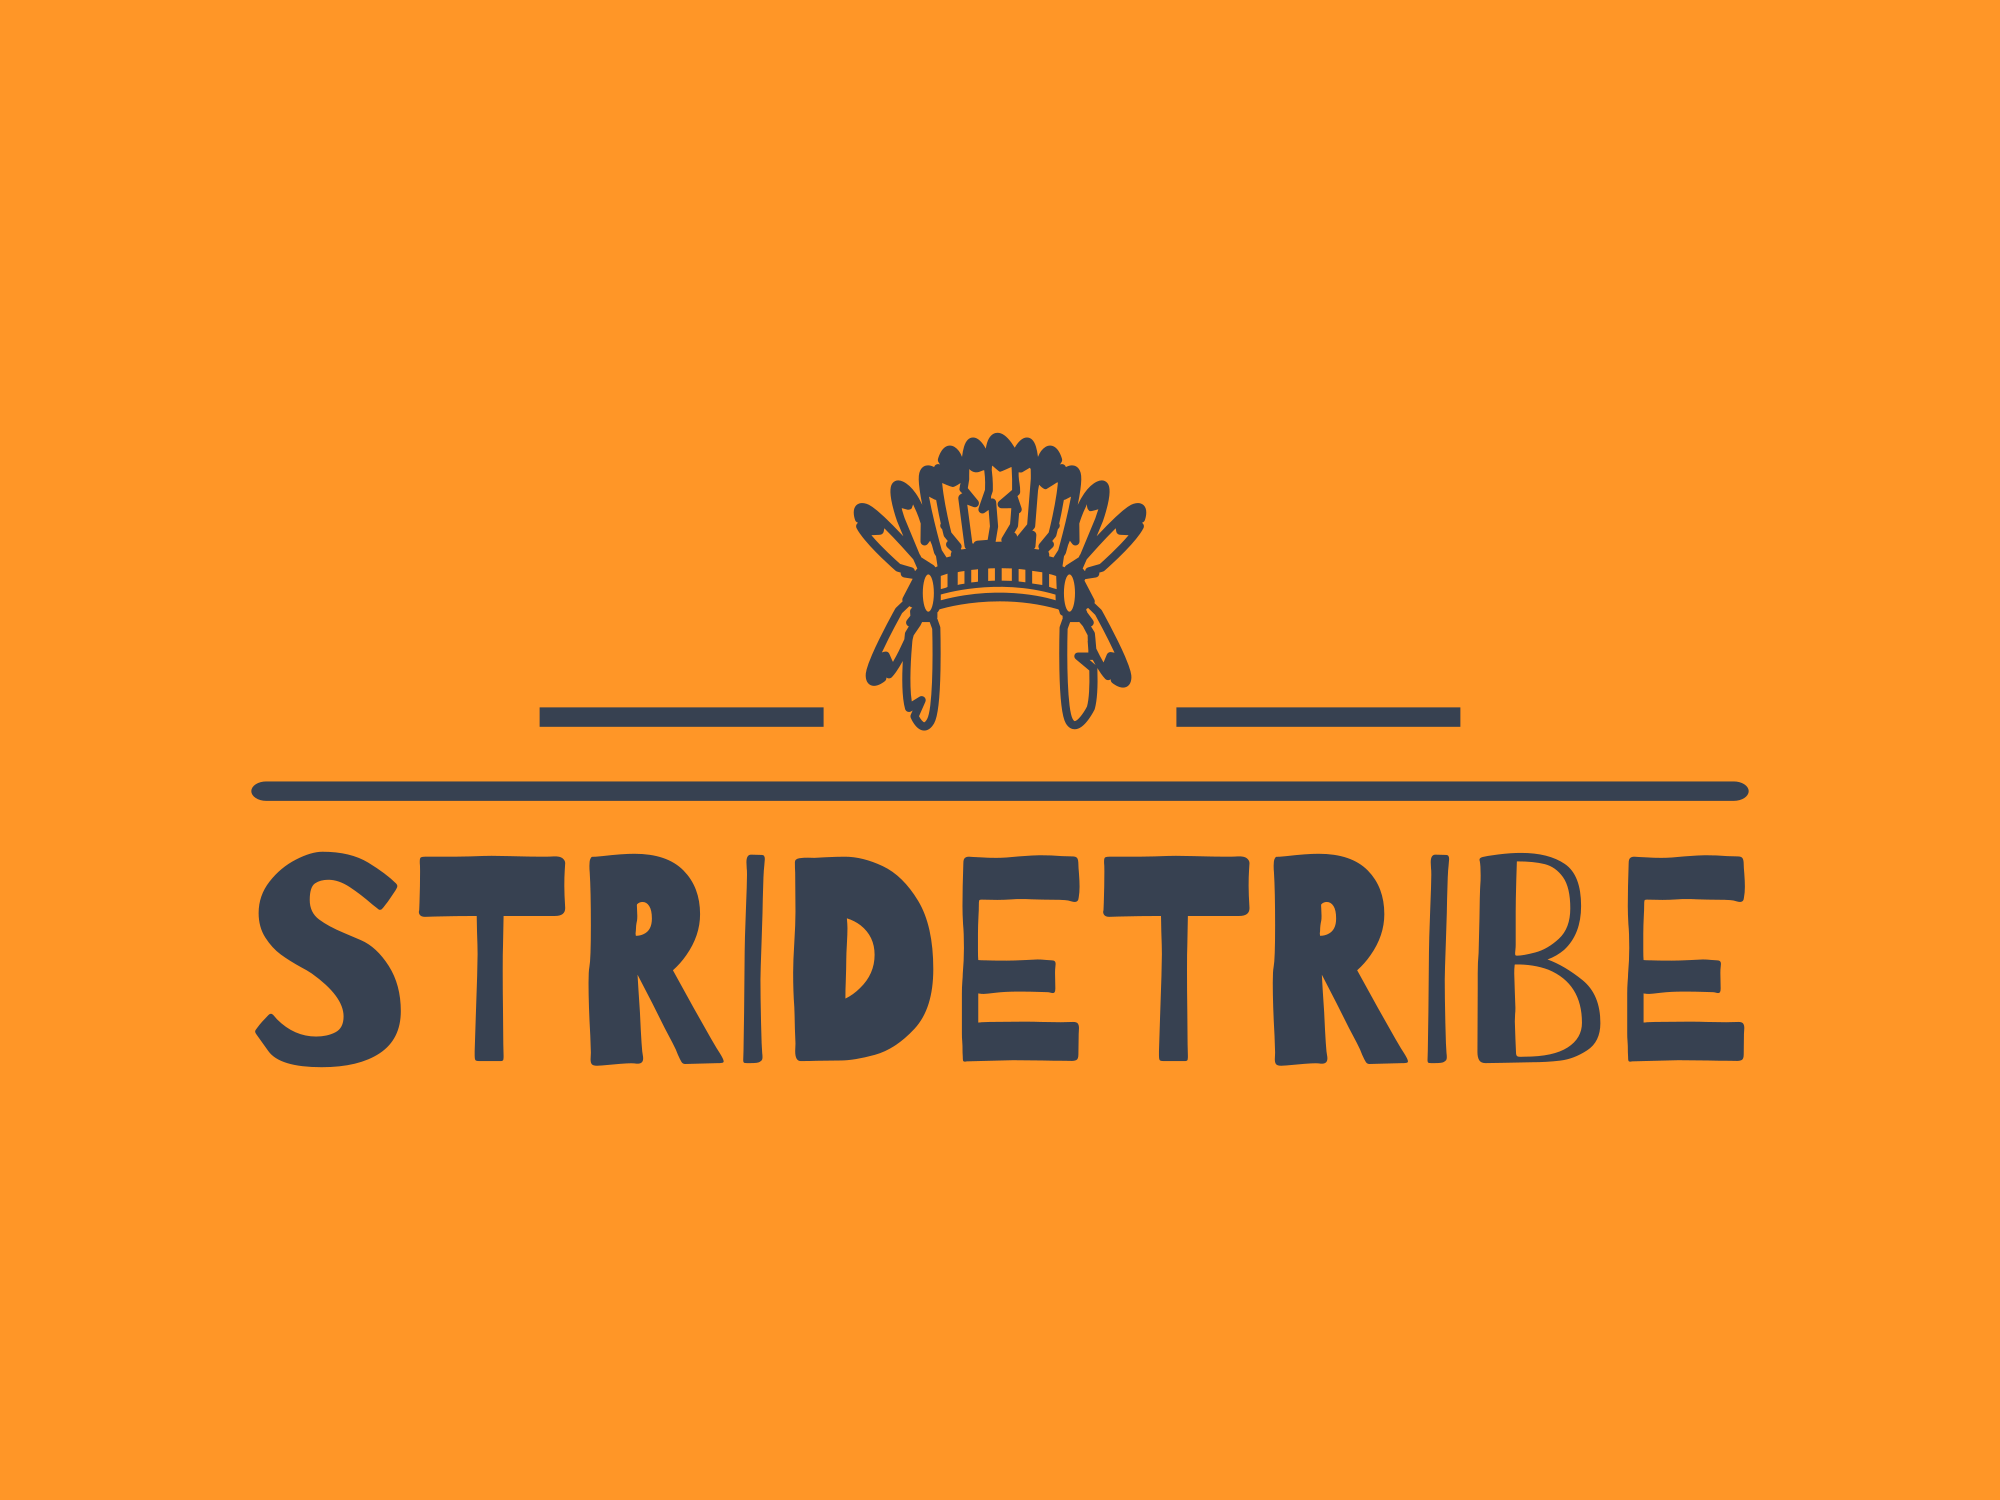 StrideTribe logo